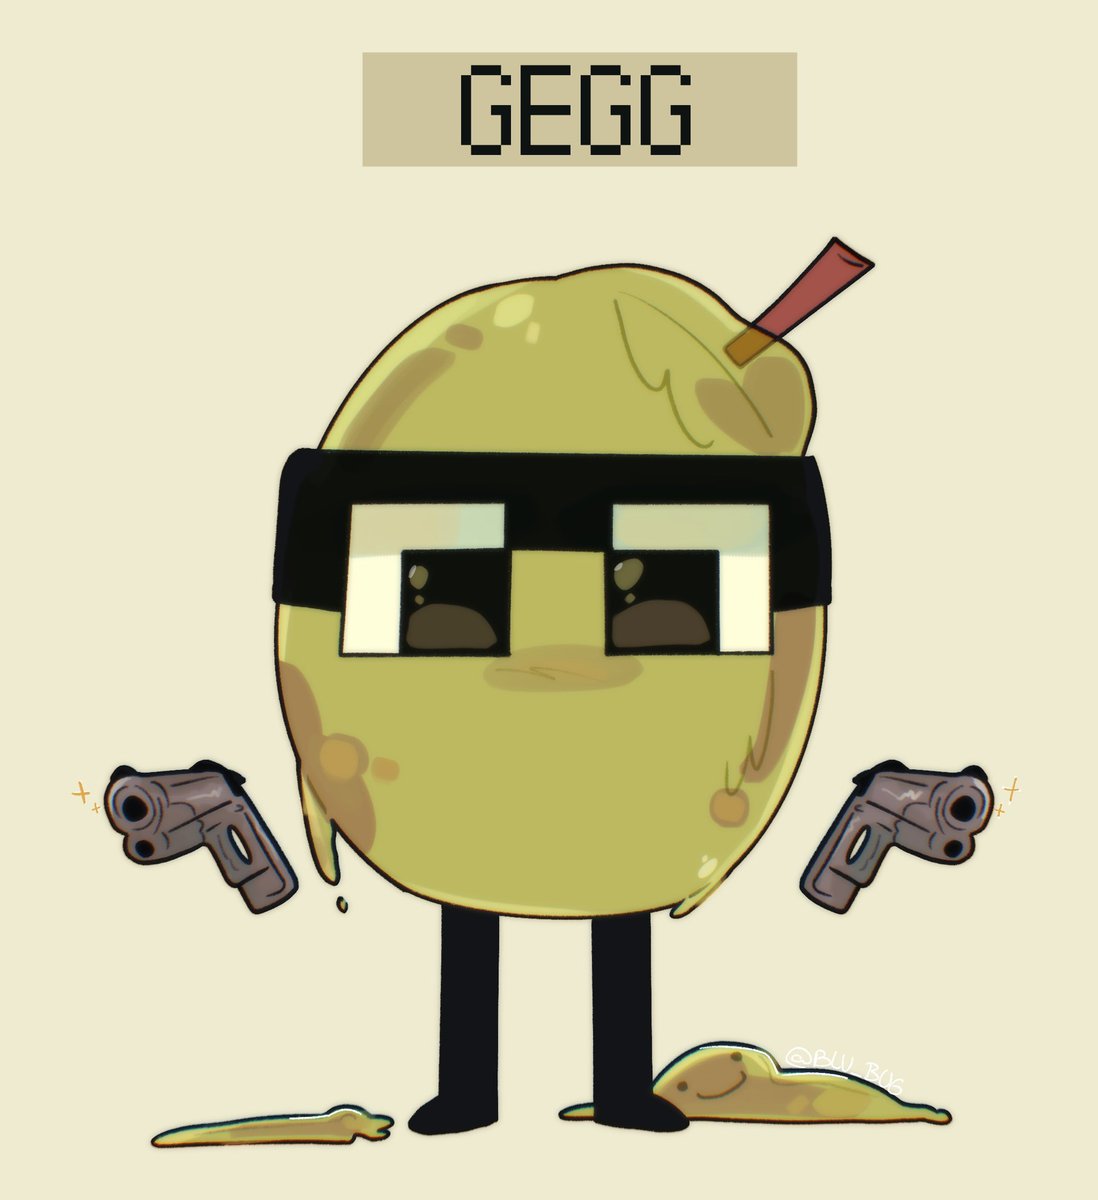 Bang!

#Gegg #Gegg2023 #Geggfanart #Qsmp #Qsmpfanart